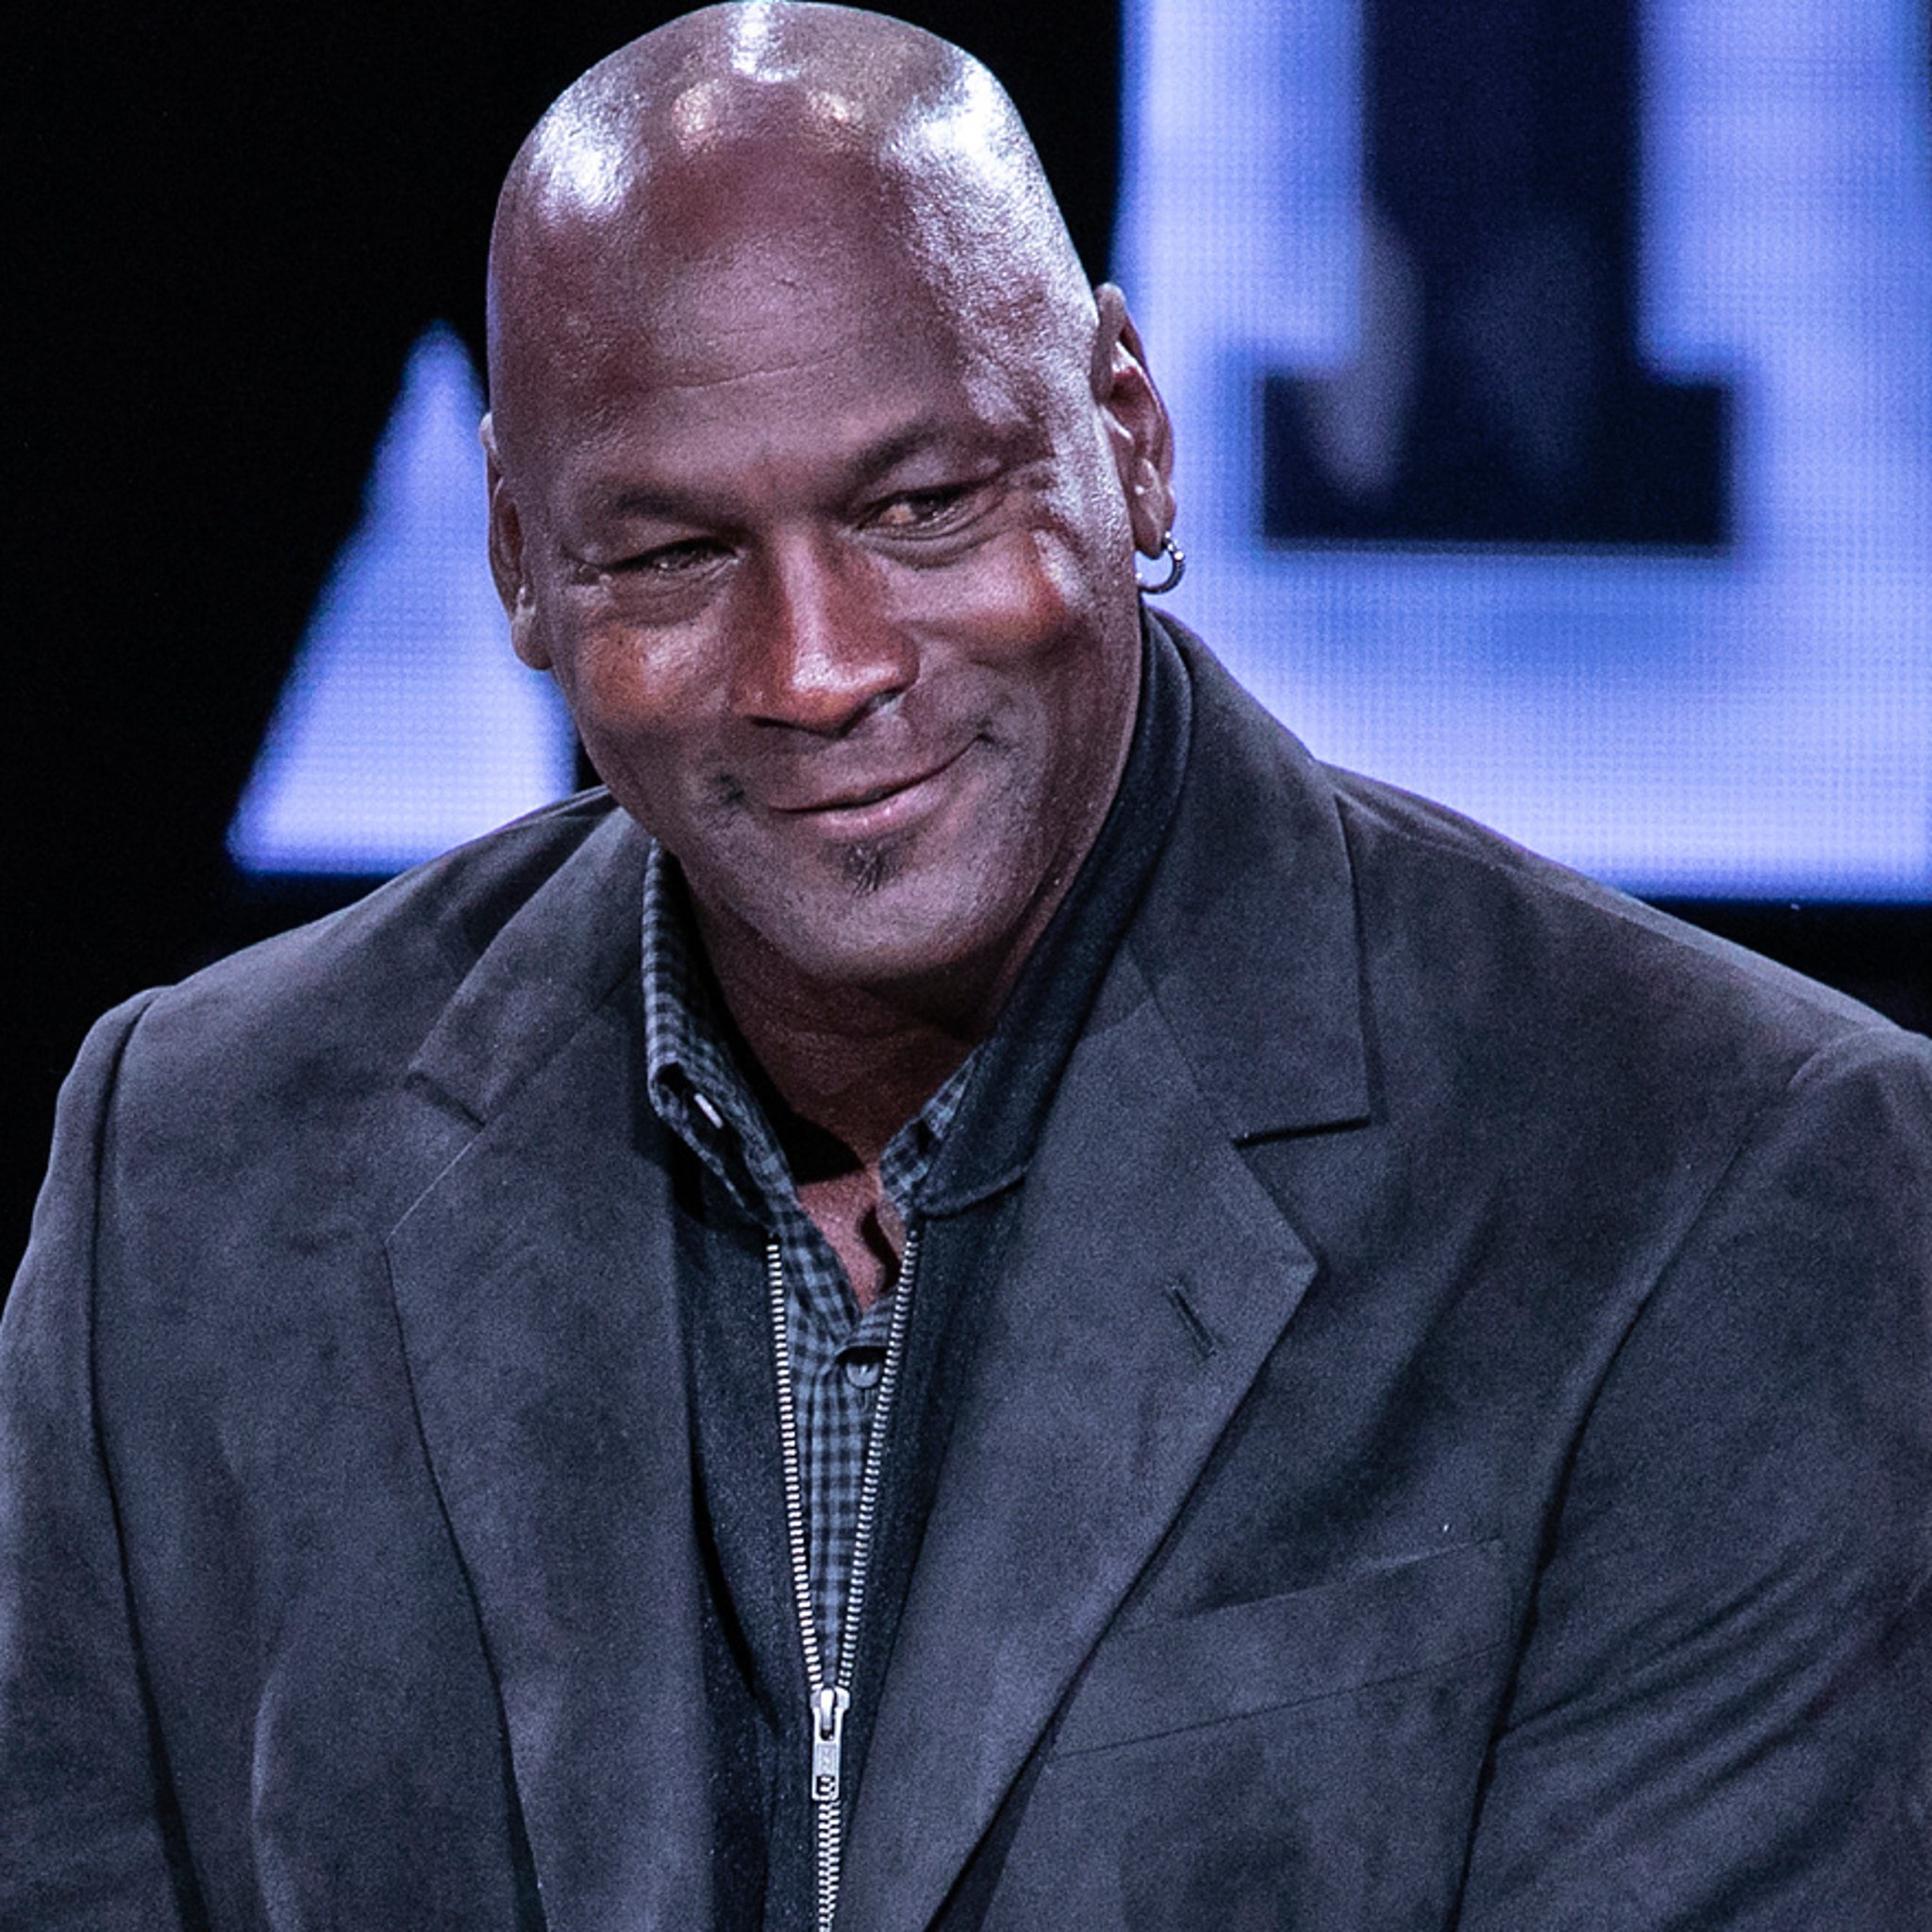 Michael Jordan donates $2 million to help build trust between